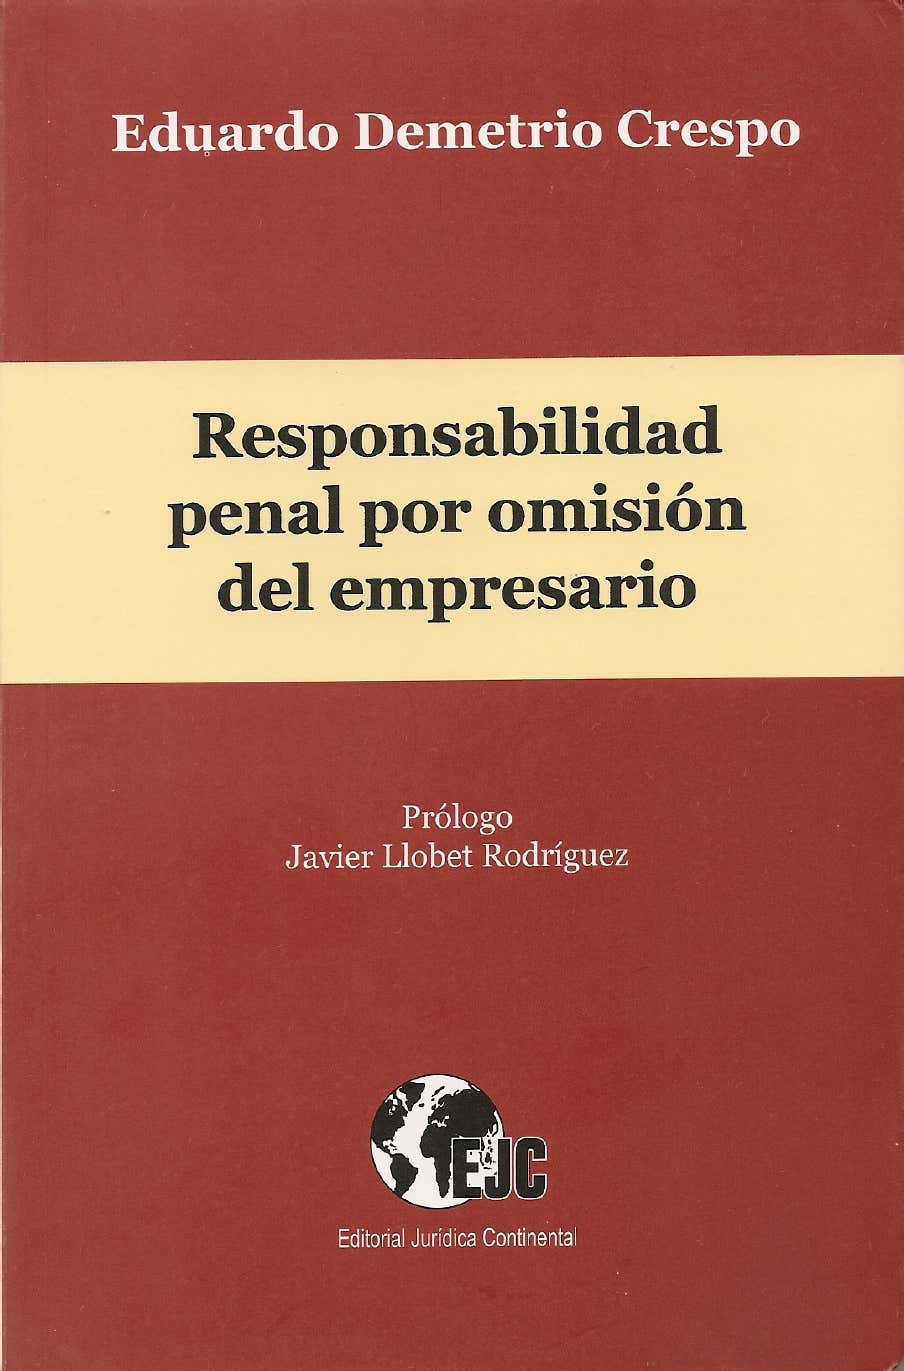 Imagen de portada del libro Responsabilidad penal por omisión del empresario